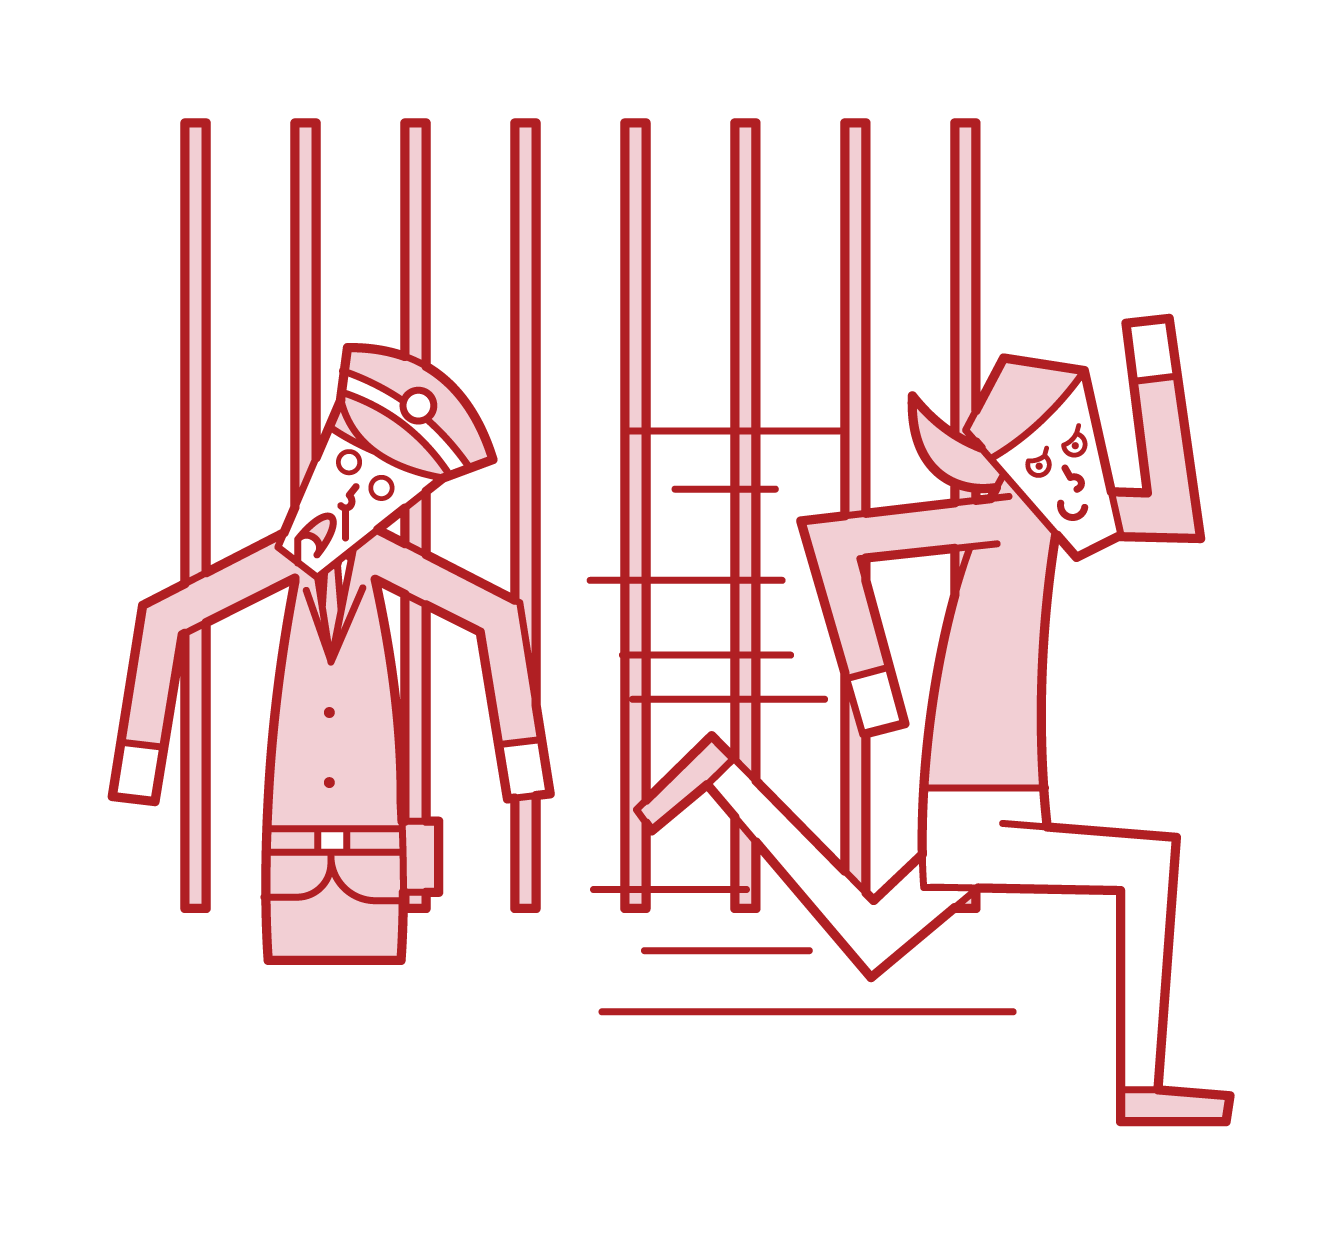 탈옥 범죄자와 수감자 (여성)의 그림